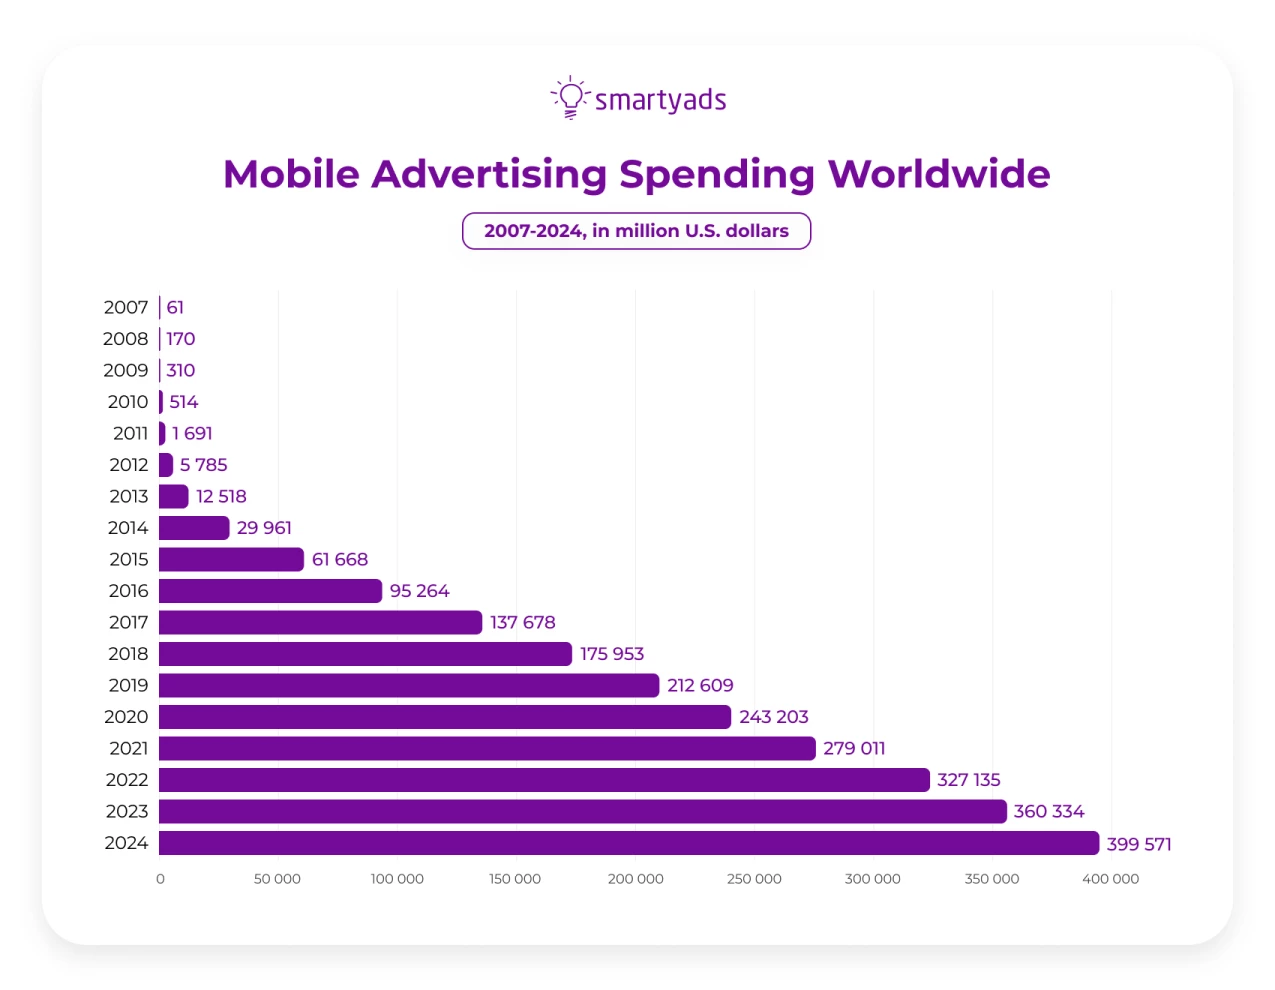 Mobile advertising spending worldwide